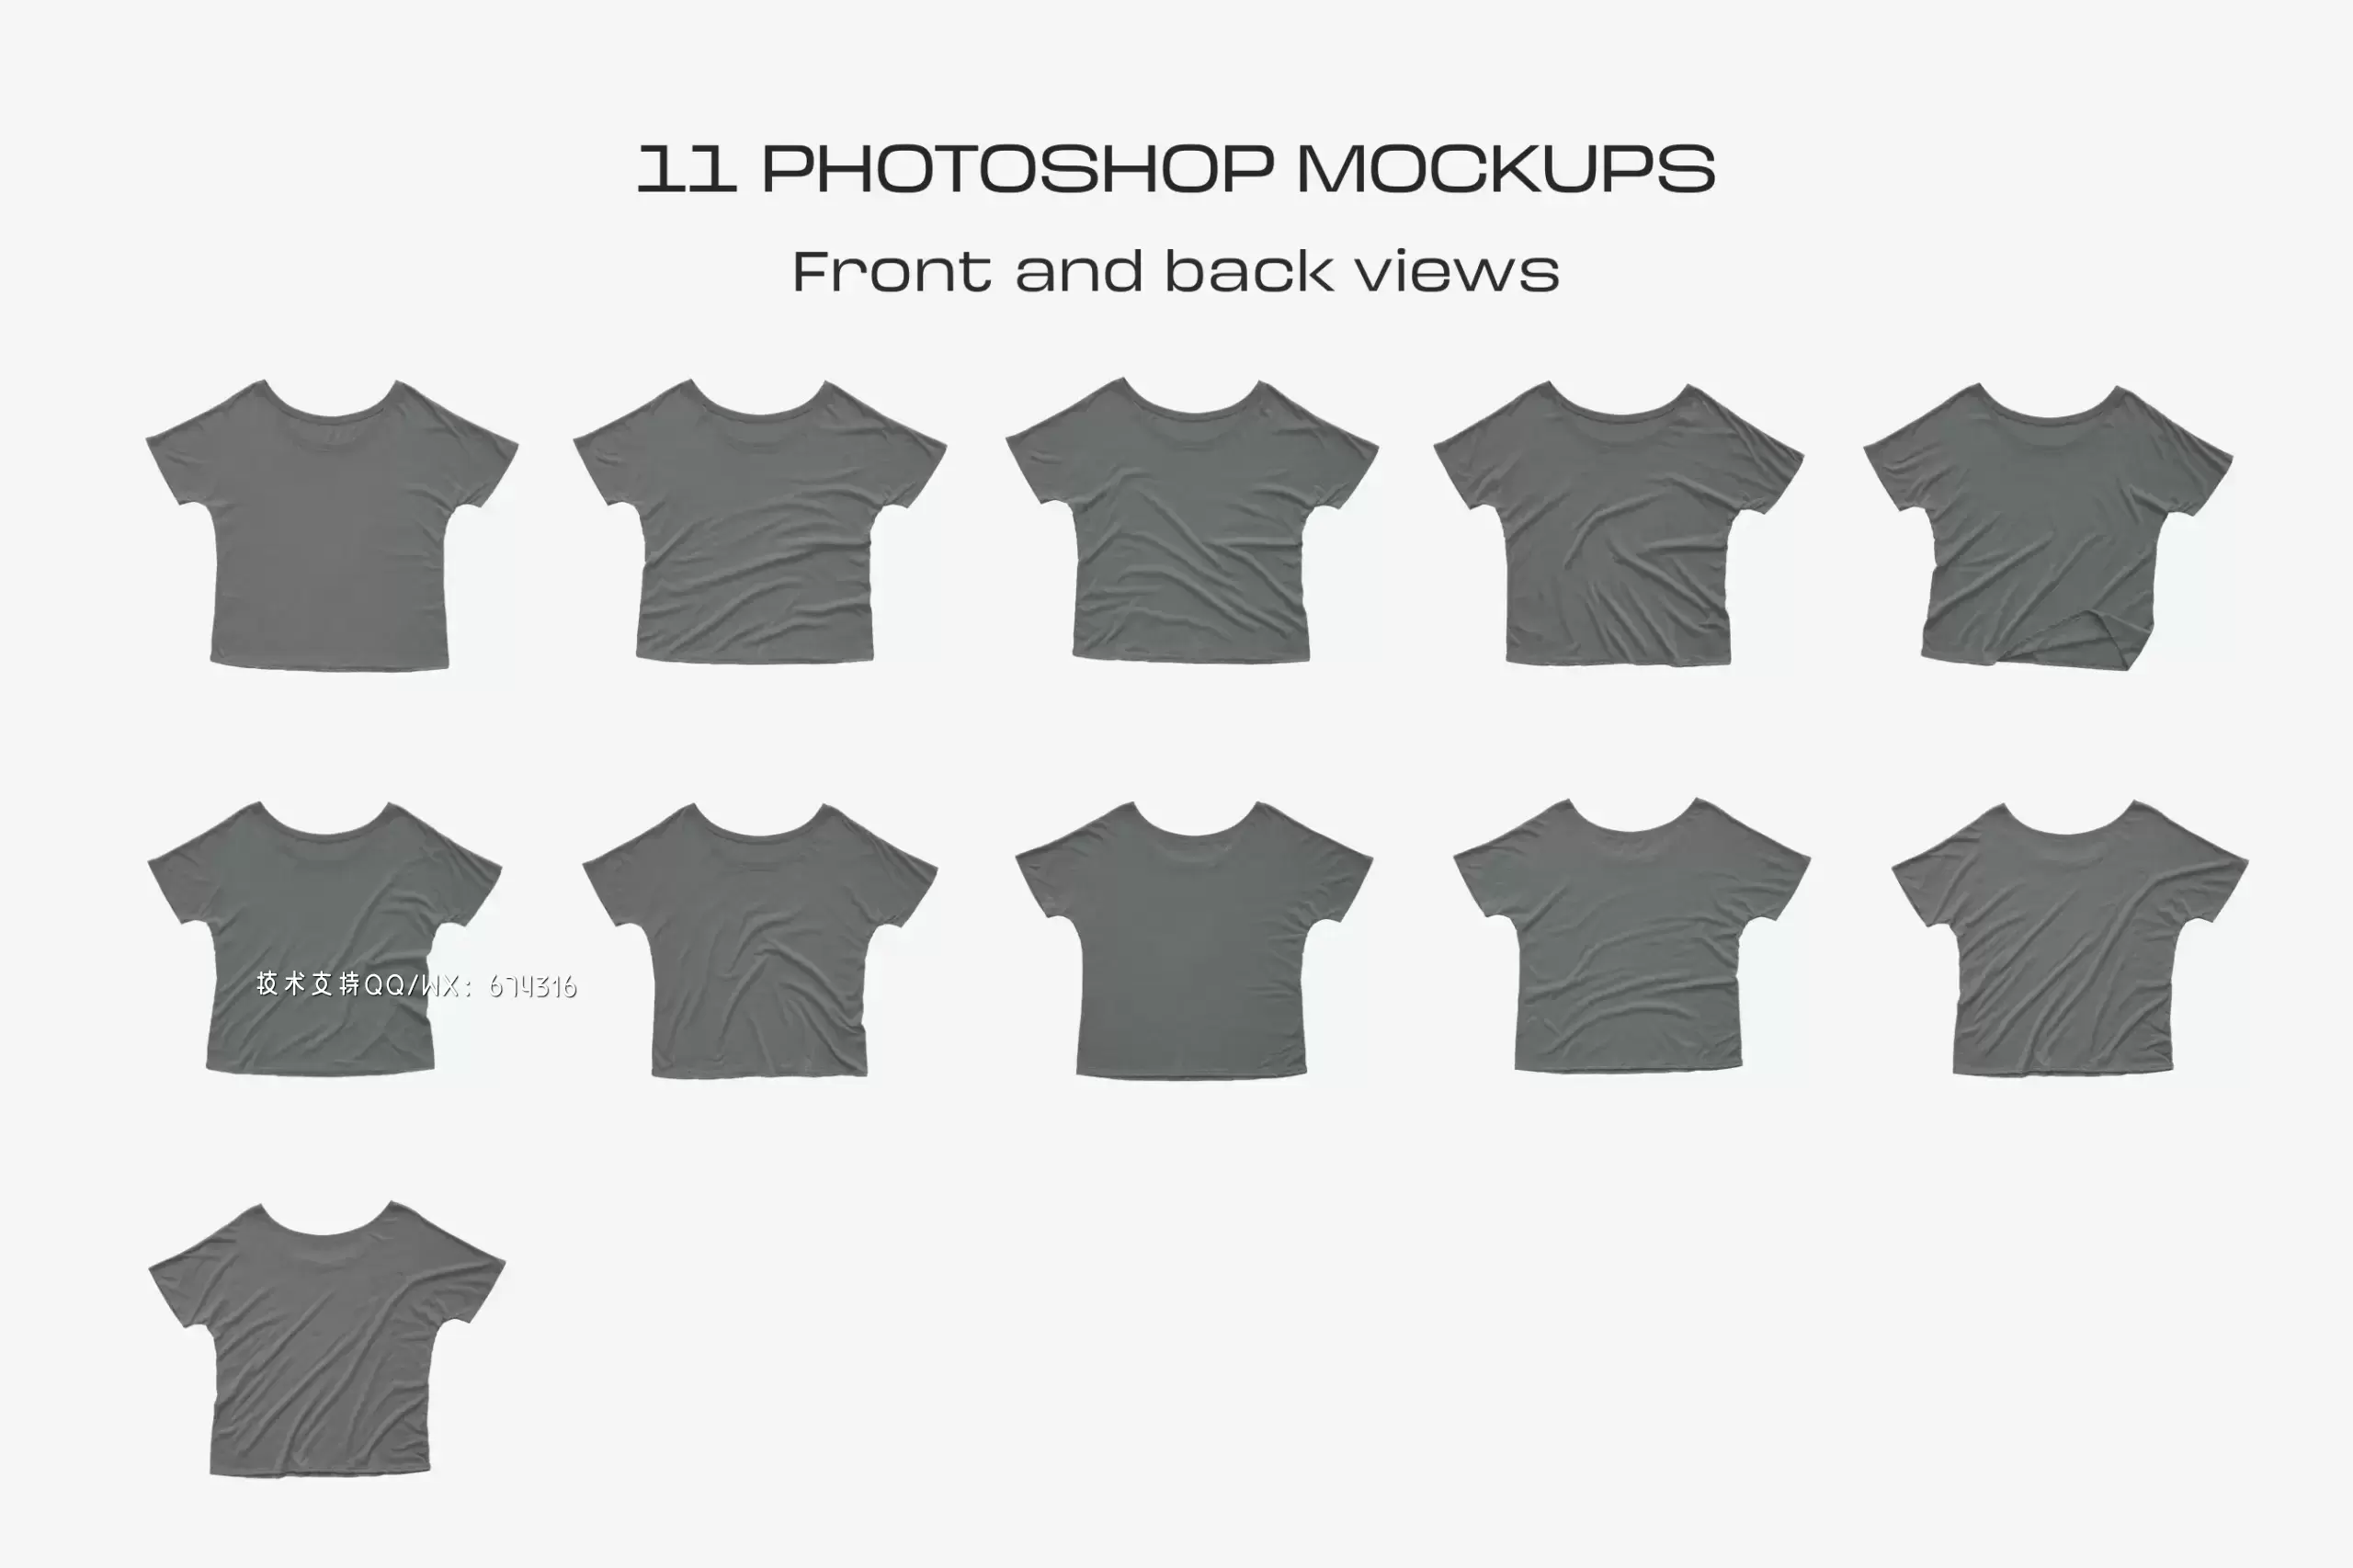 作品图案展示T恤服装样机 (psd)免费下载插图8